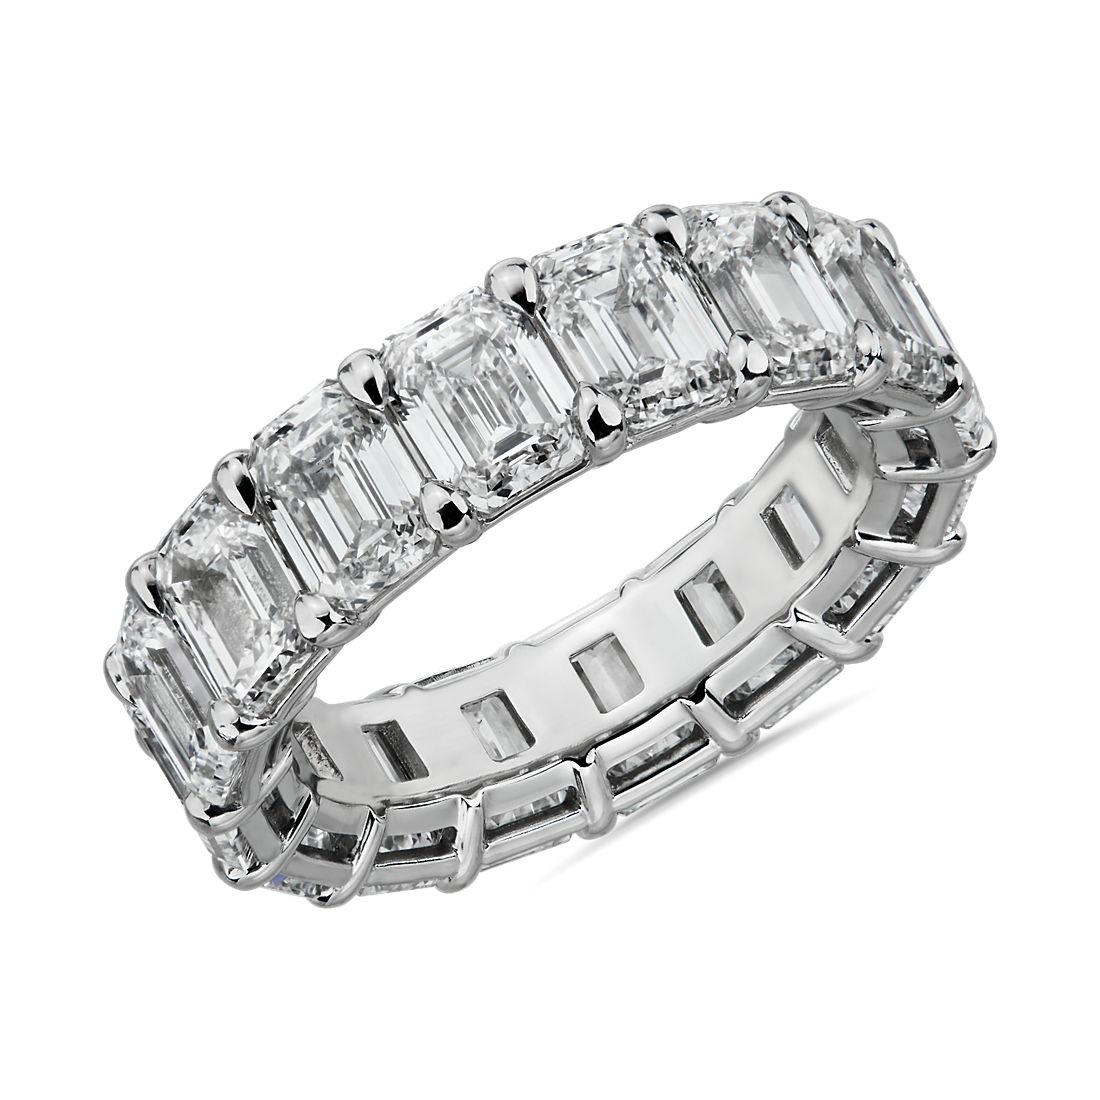 Emerald Cut Diamond Eternity Ring in Platinum (8.0 ct. tw.)